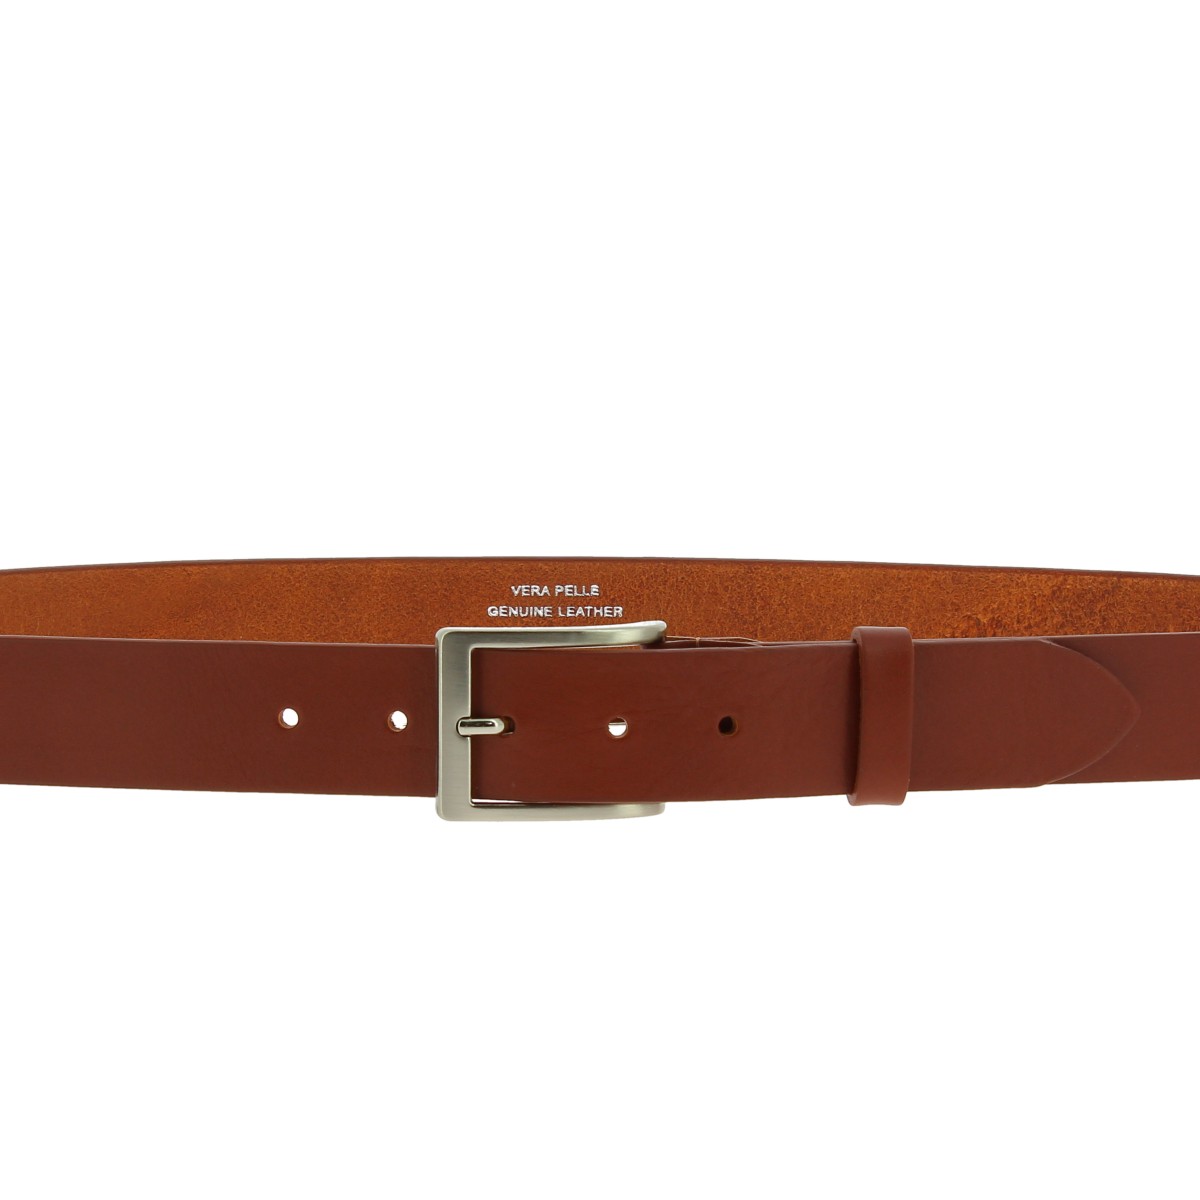 Cintura Cabaña mecánico Cinturón de piel de curtido vegetal con hebilla de metal clásica |  Artesanos del cuero